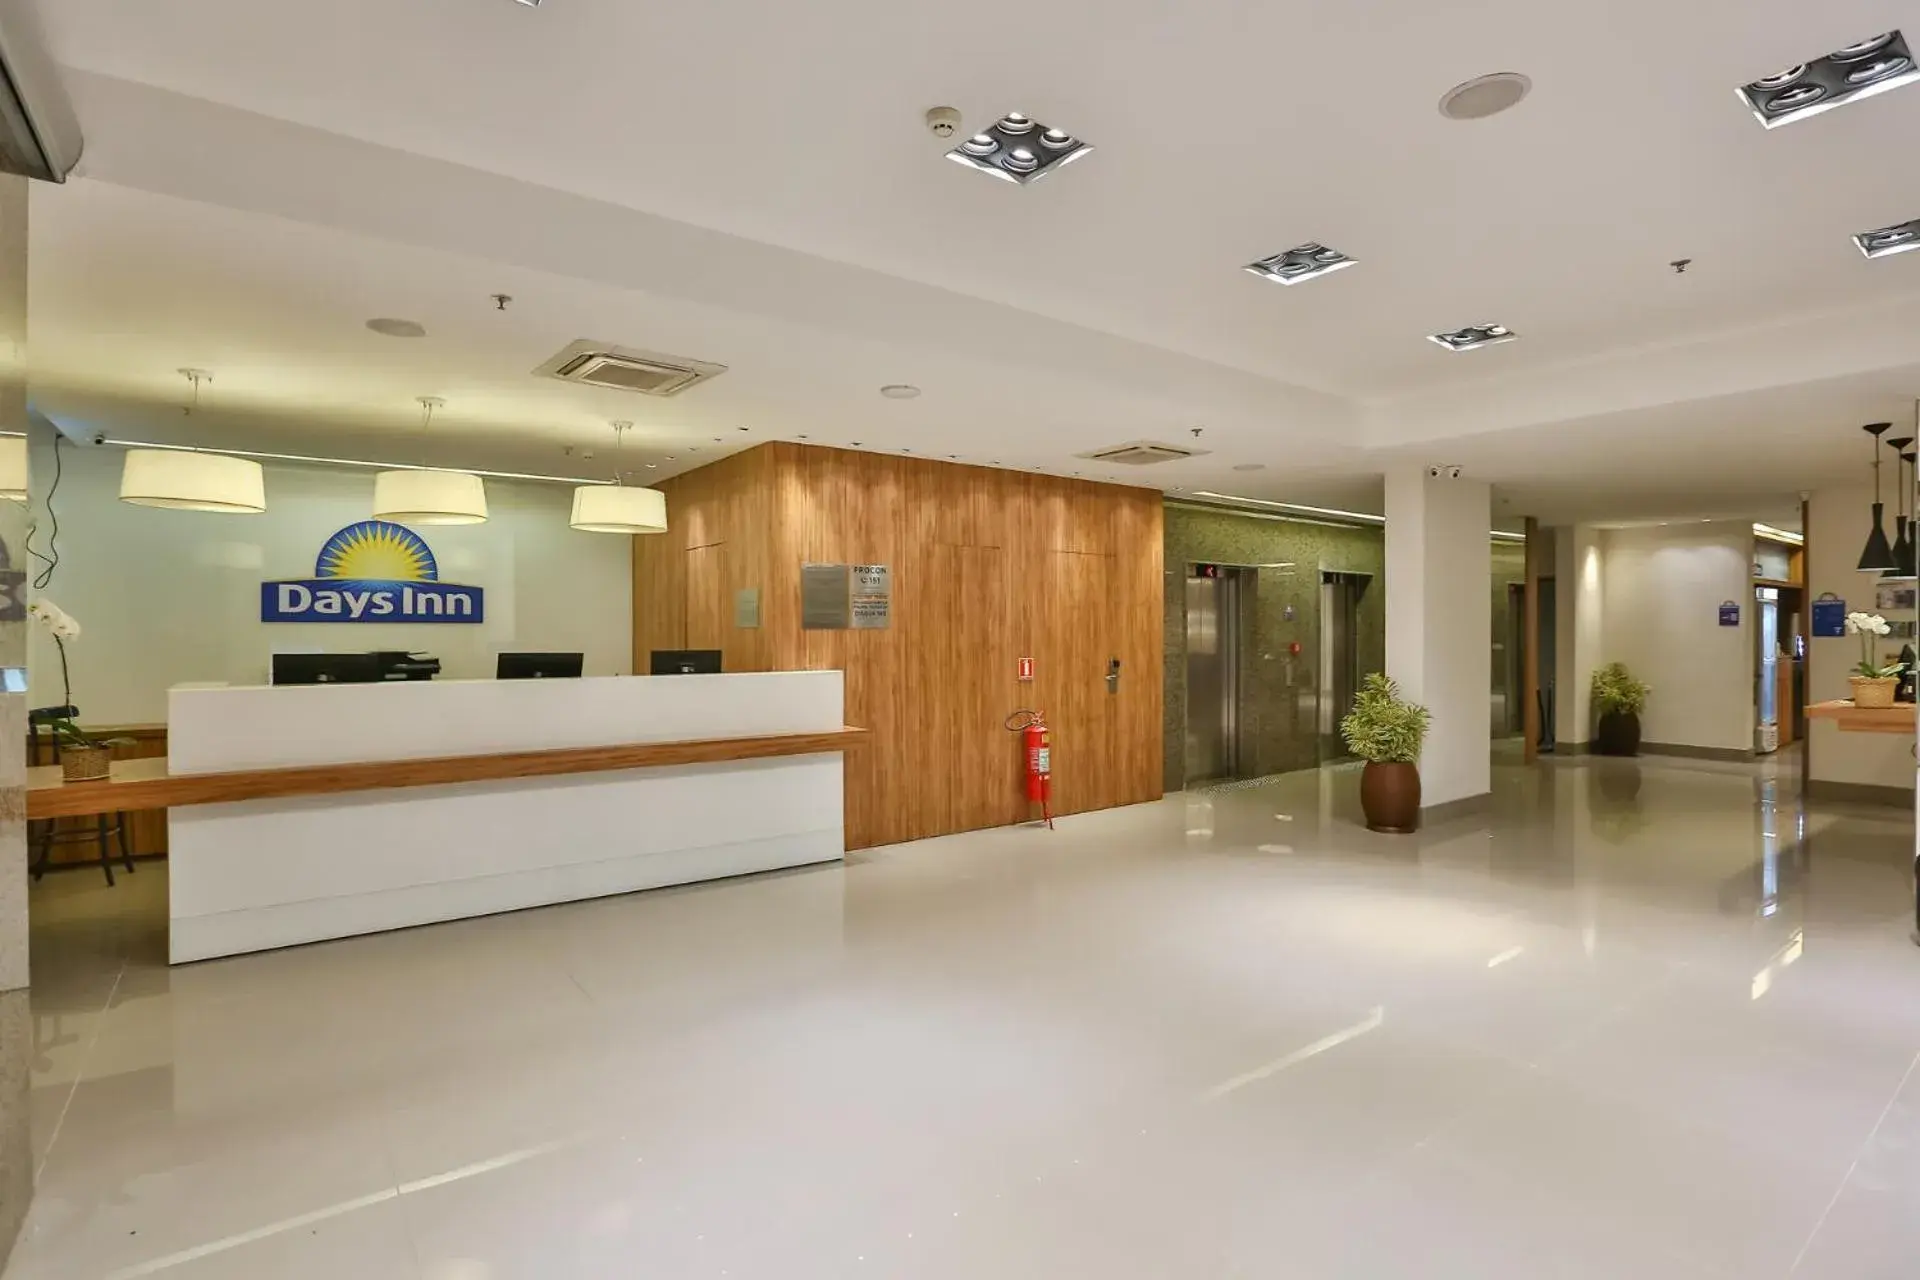 Lobby or reception, Lobby/Reception in Days Inn by Wyndham Rio de Janeiro Lapa